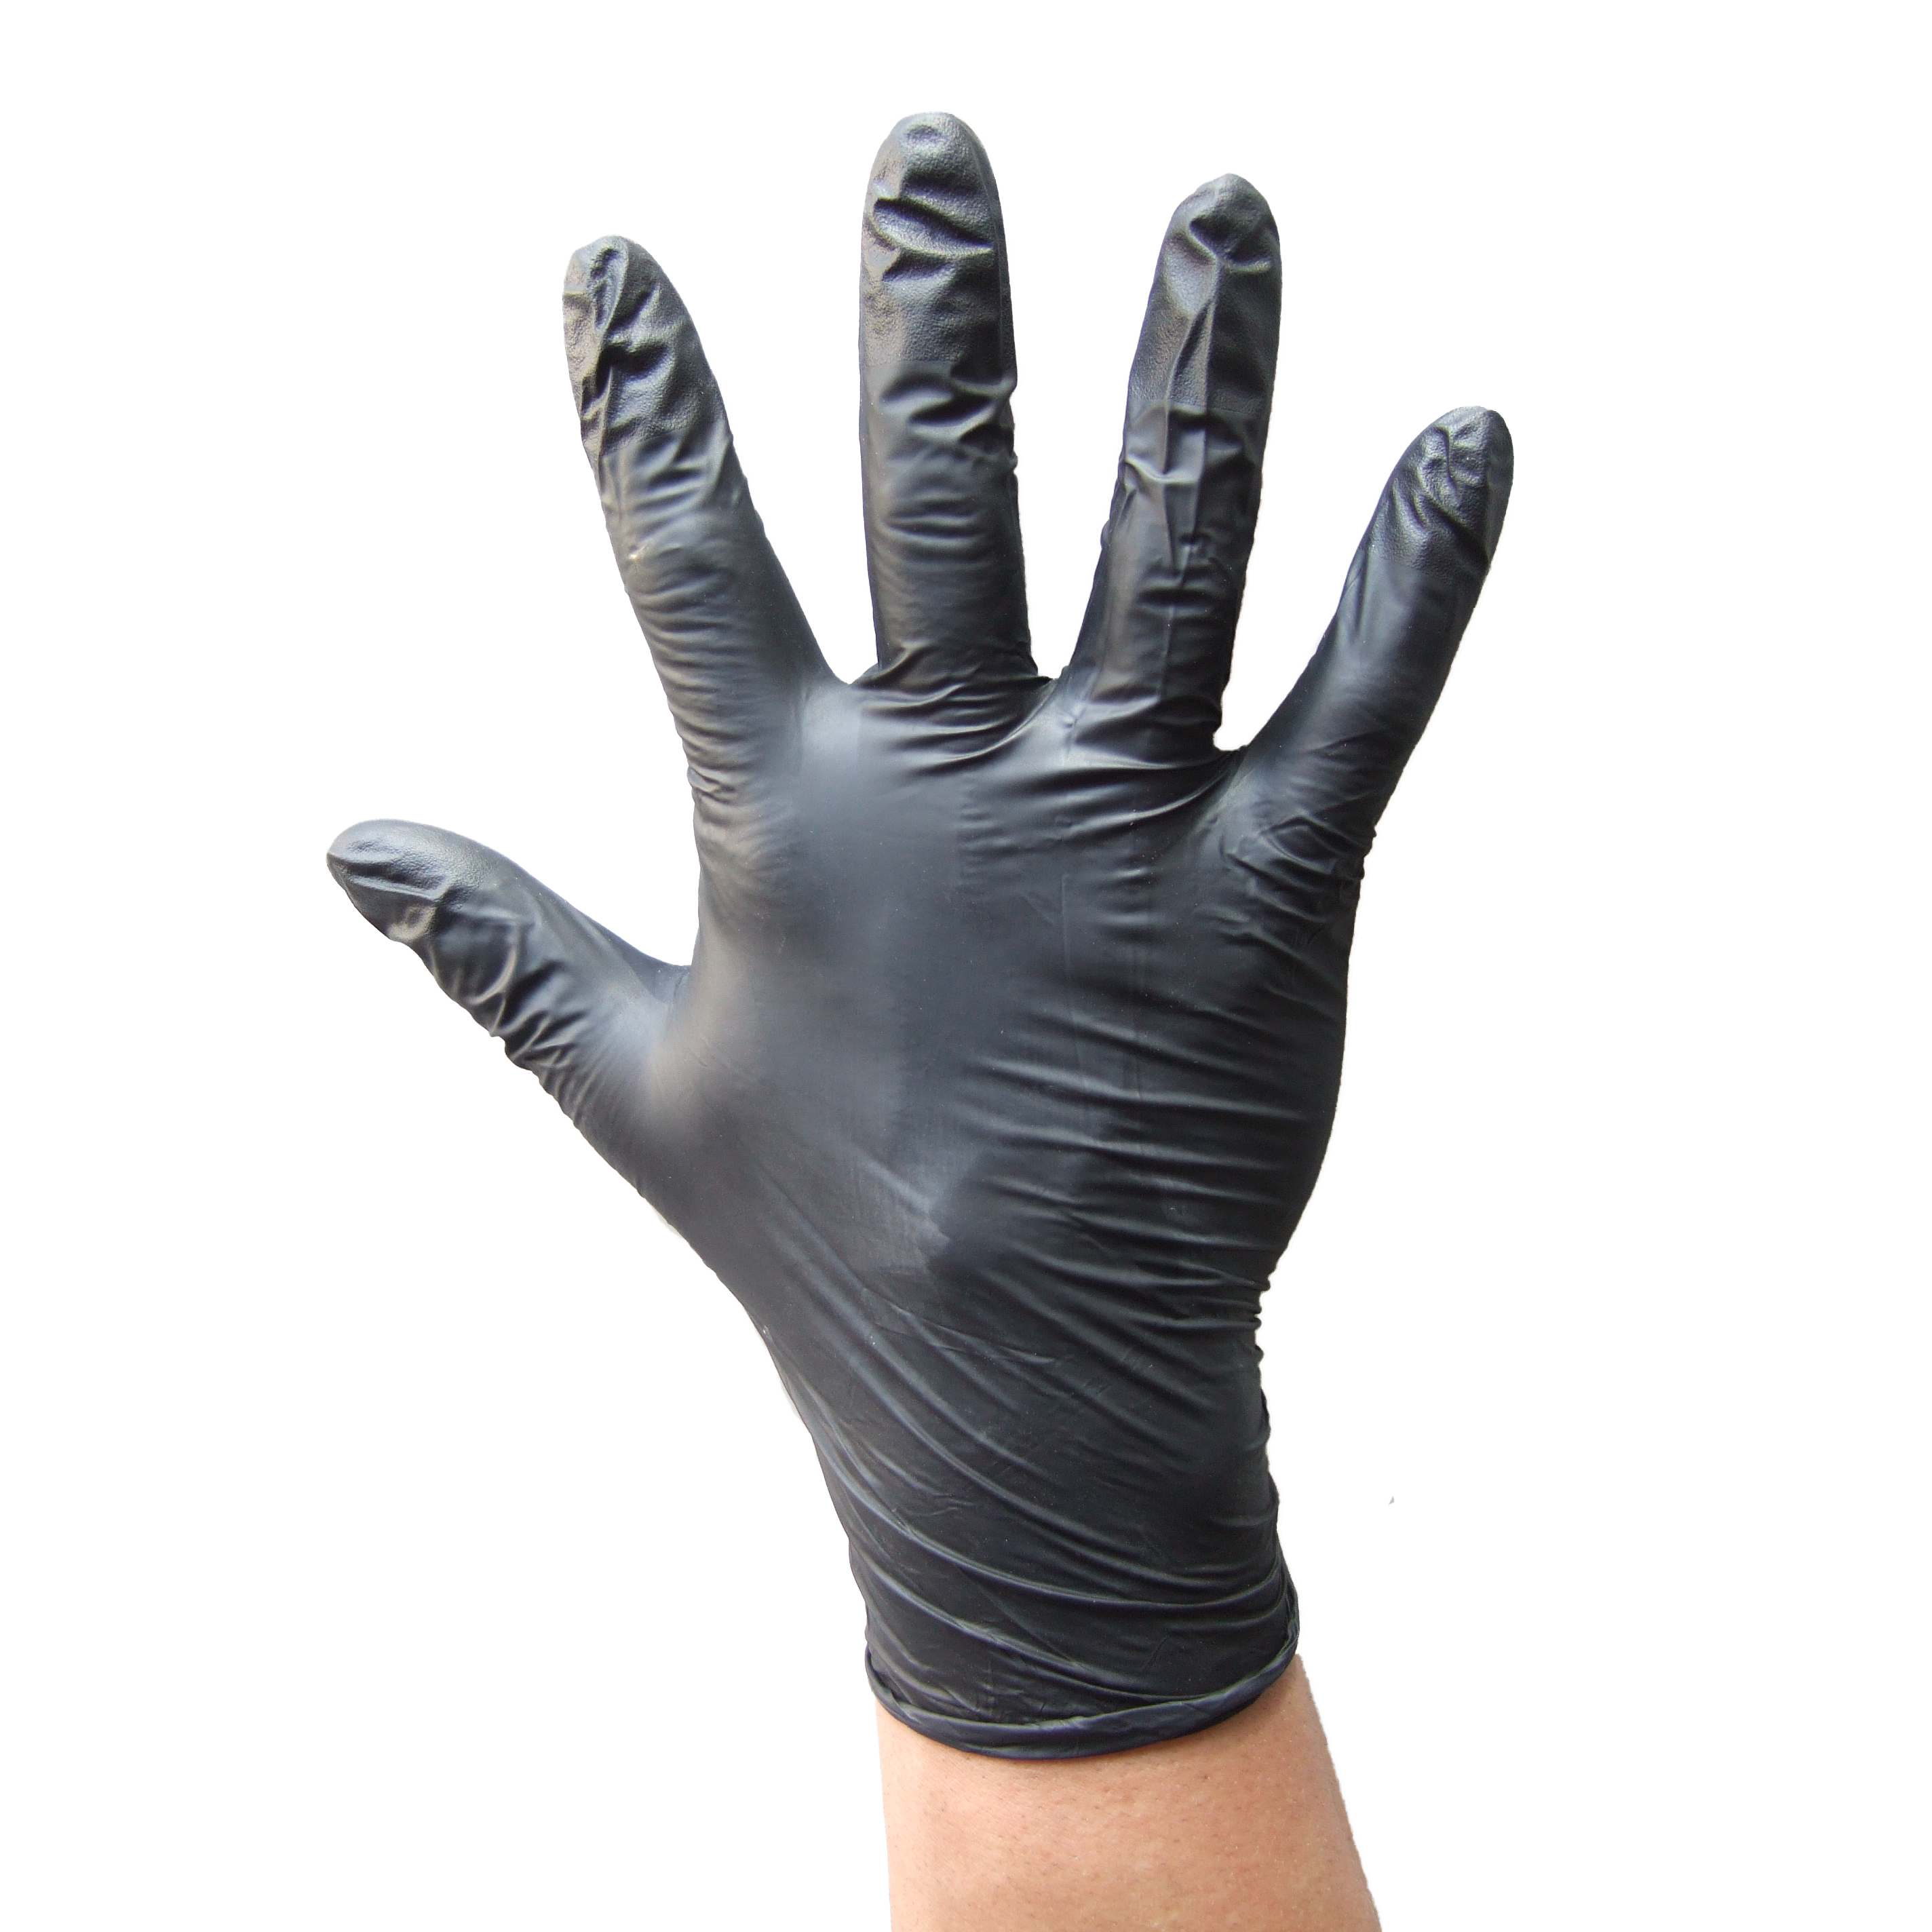 Gants nitrile – Vente gant nitrile Noirs pas cher – Gants médicaux en latex